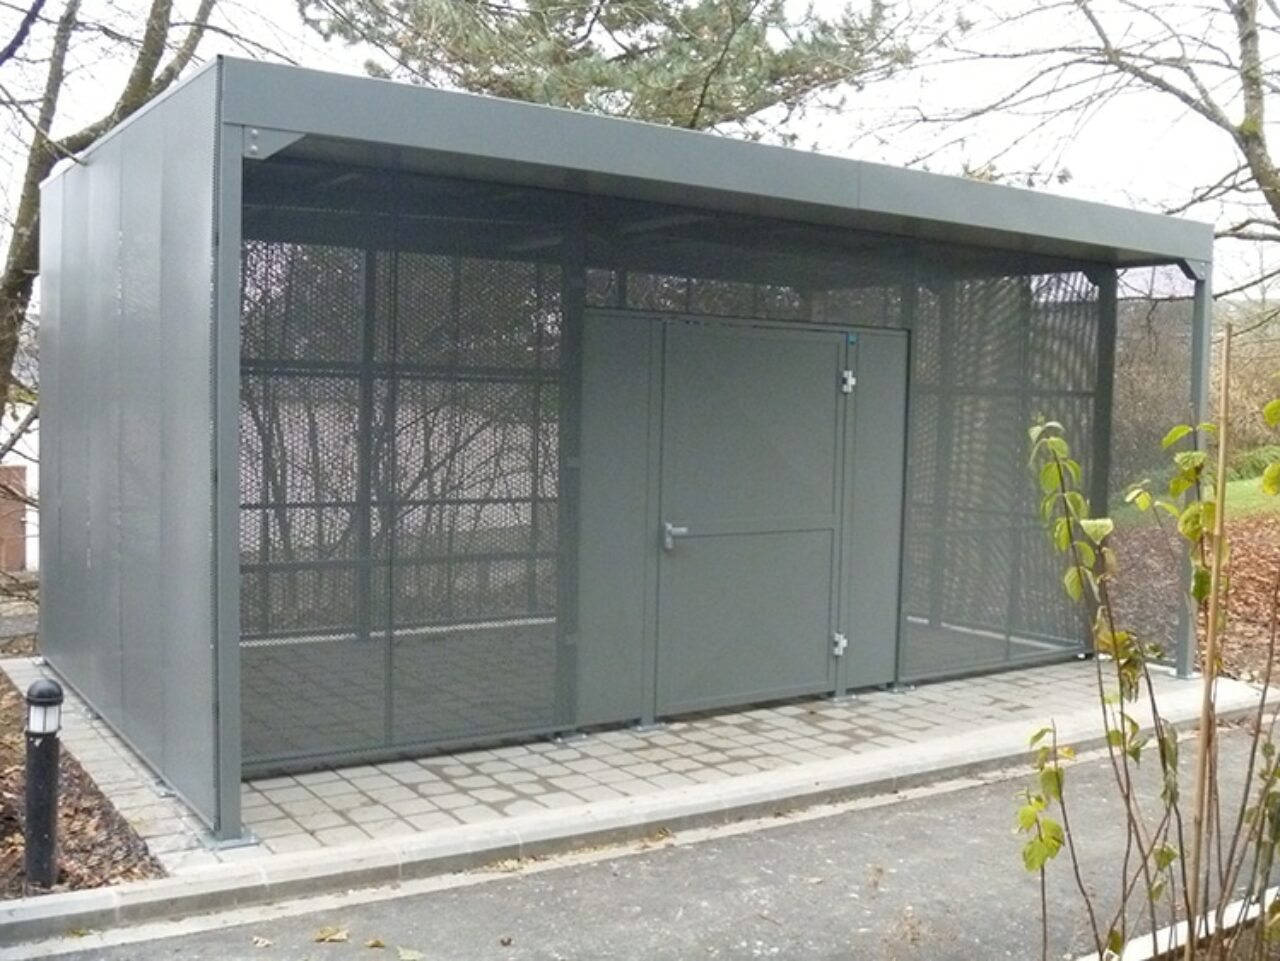 Abri Plus - Garage à vélos sécurisé - Modèle Square + - Wolters Mabeg - Ministère des Finances (Luxembourg)